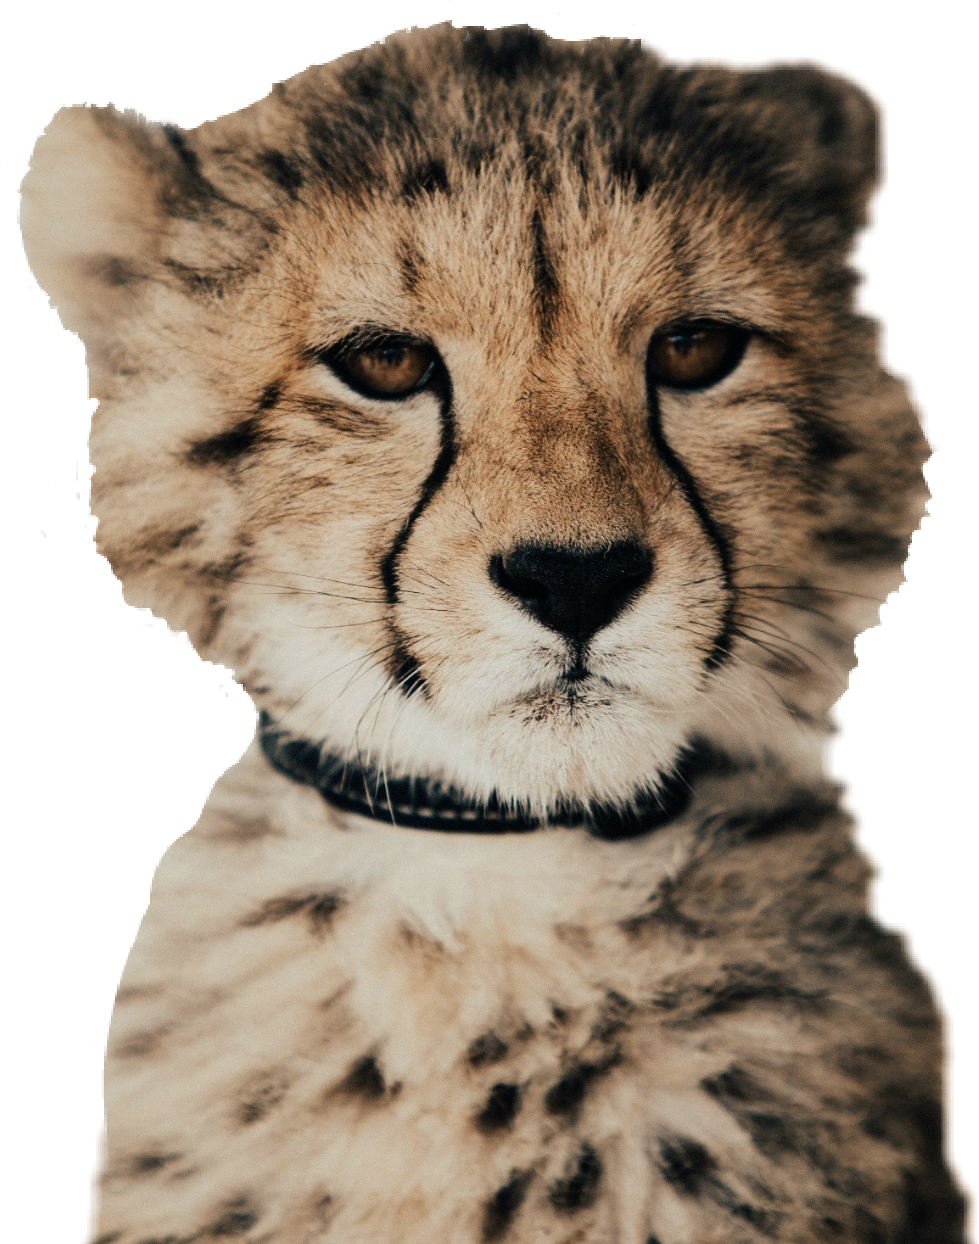 A Close Up Of A Cheetah